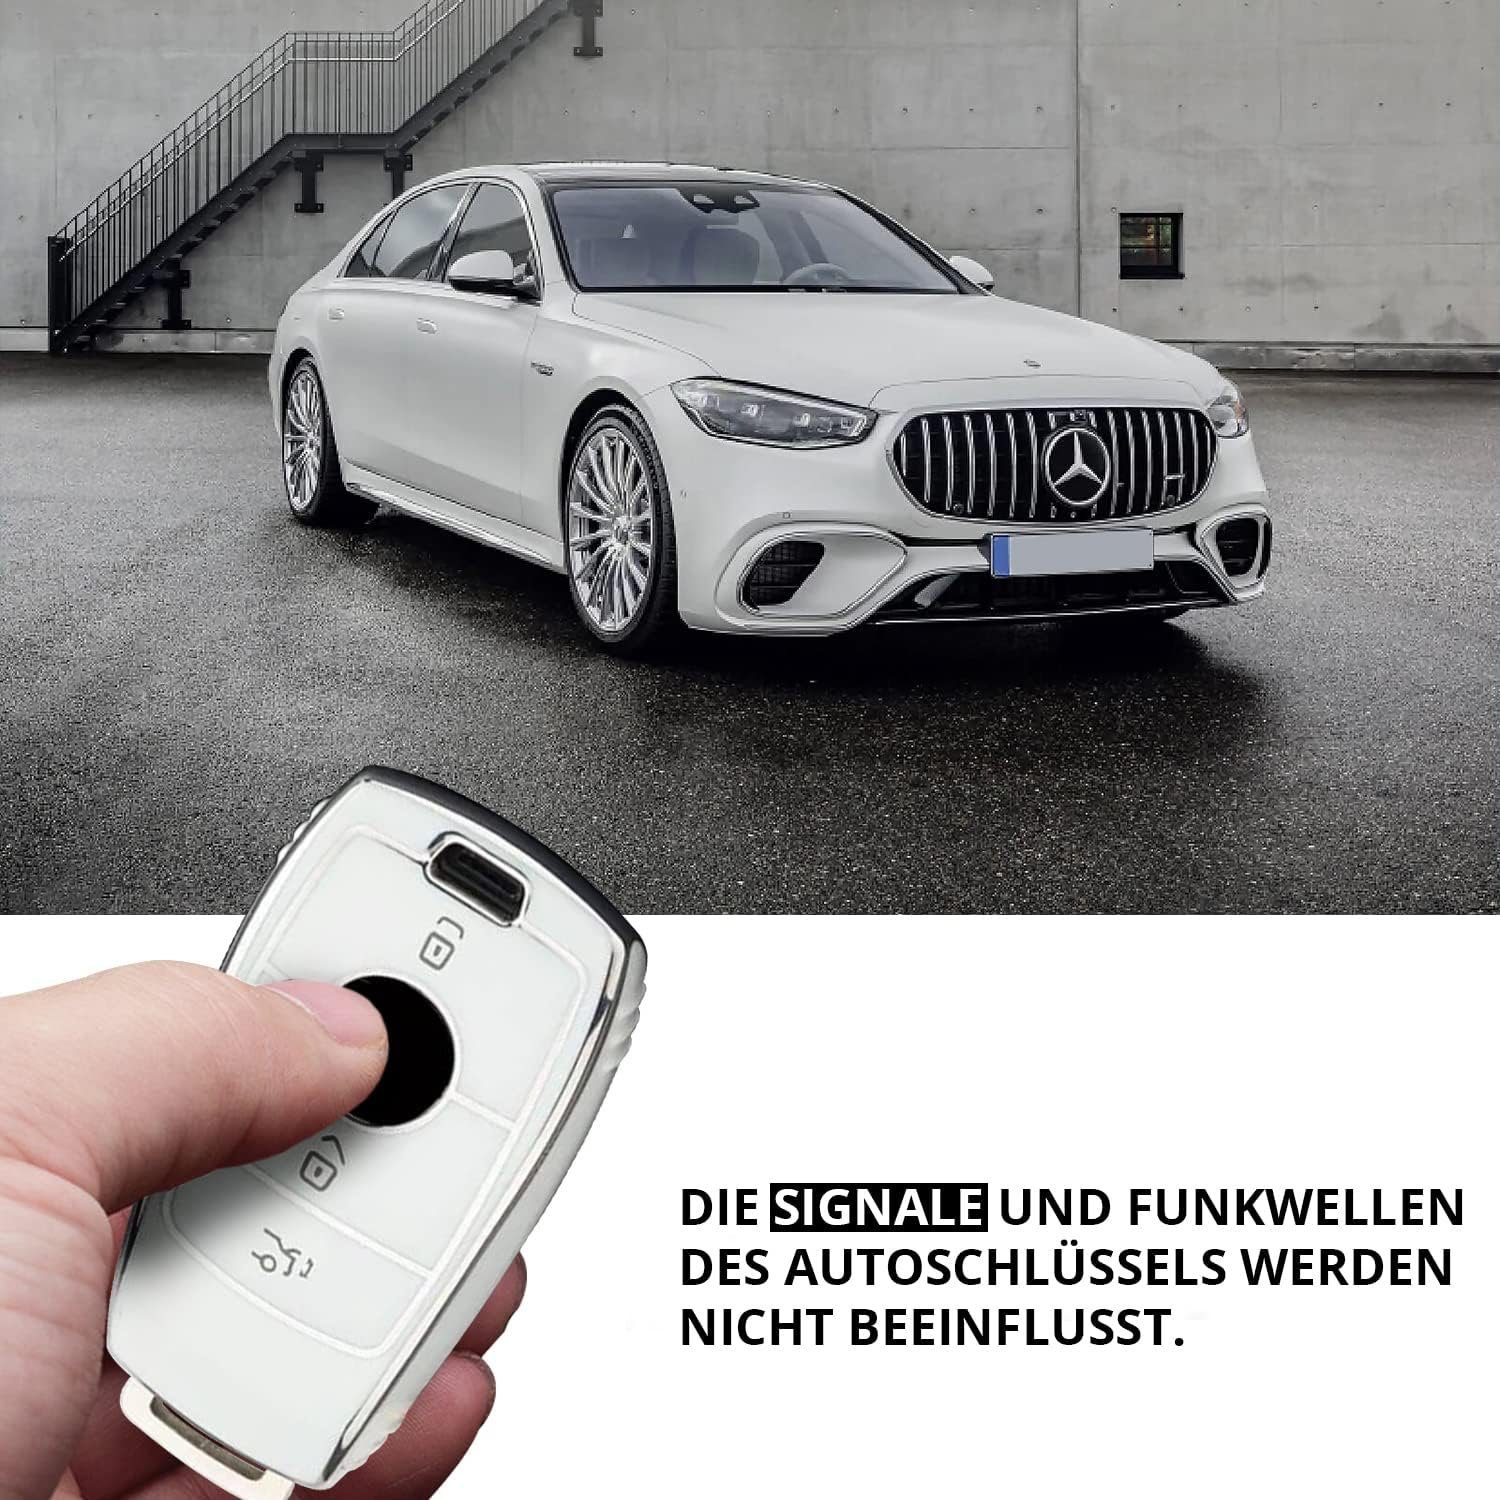 Keyscover Cover Tasche Autoschlüssel Weiss/Chrom Benz, Mercedes Schlüsselhülle Hülle für Schlüsseltasche